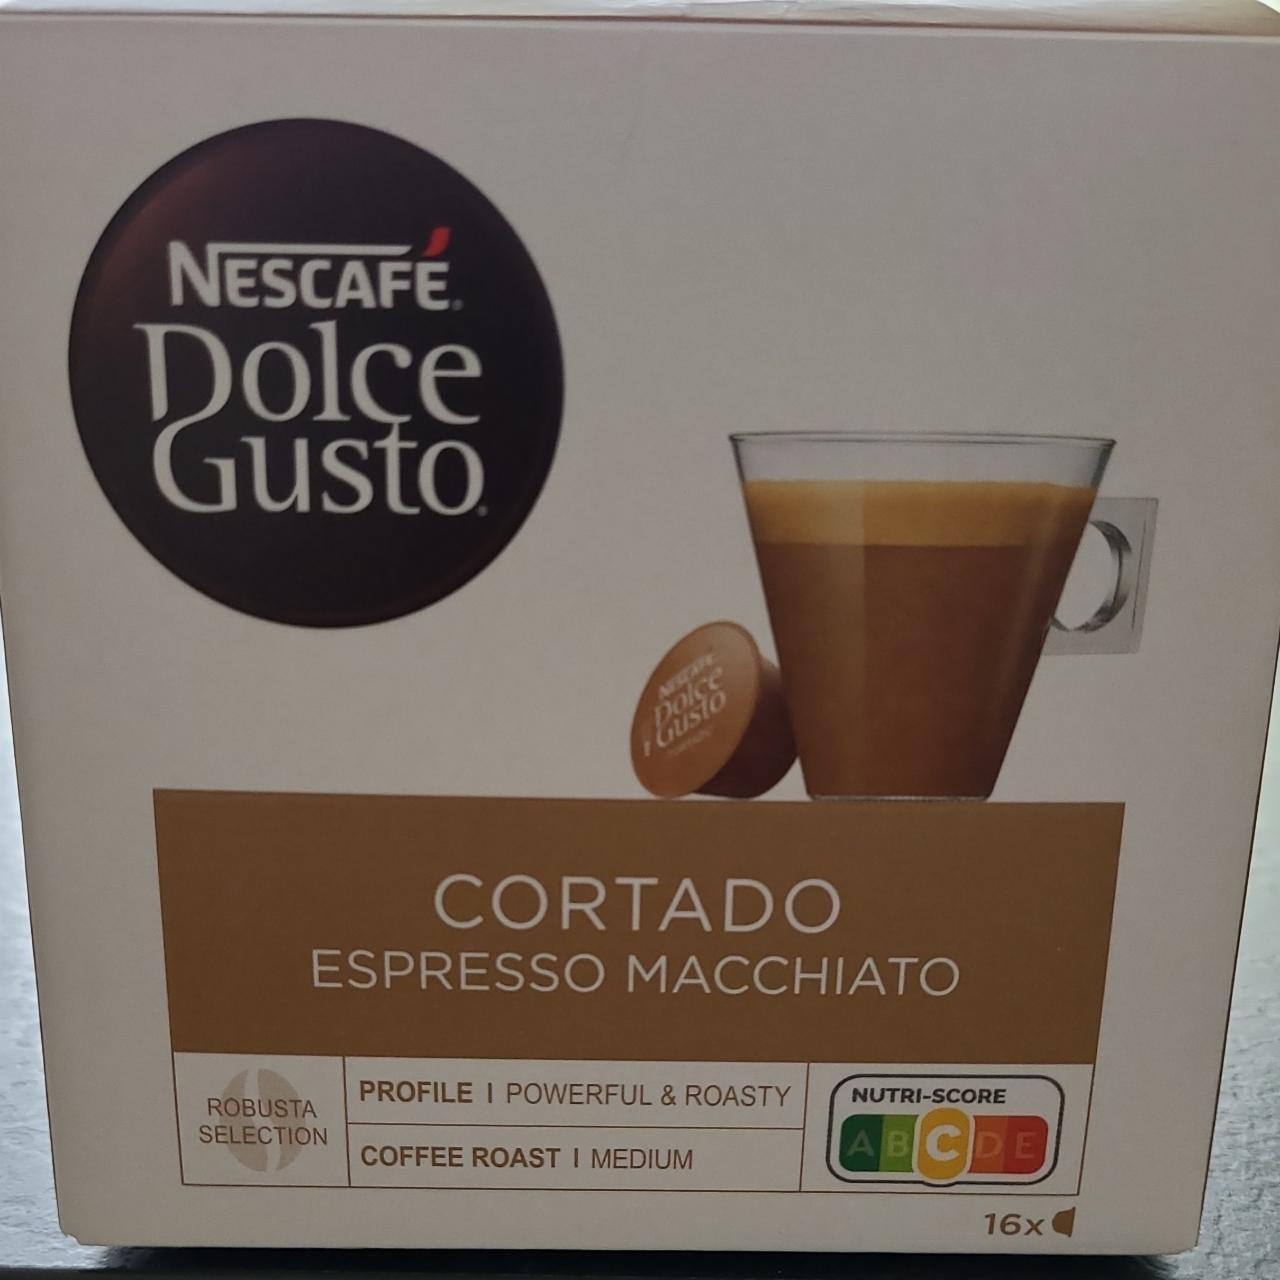 Képek - Dolce Gusto Cortado espresso macchiato Nescafé